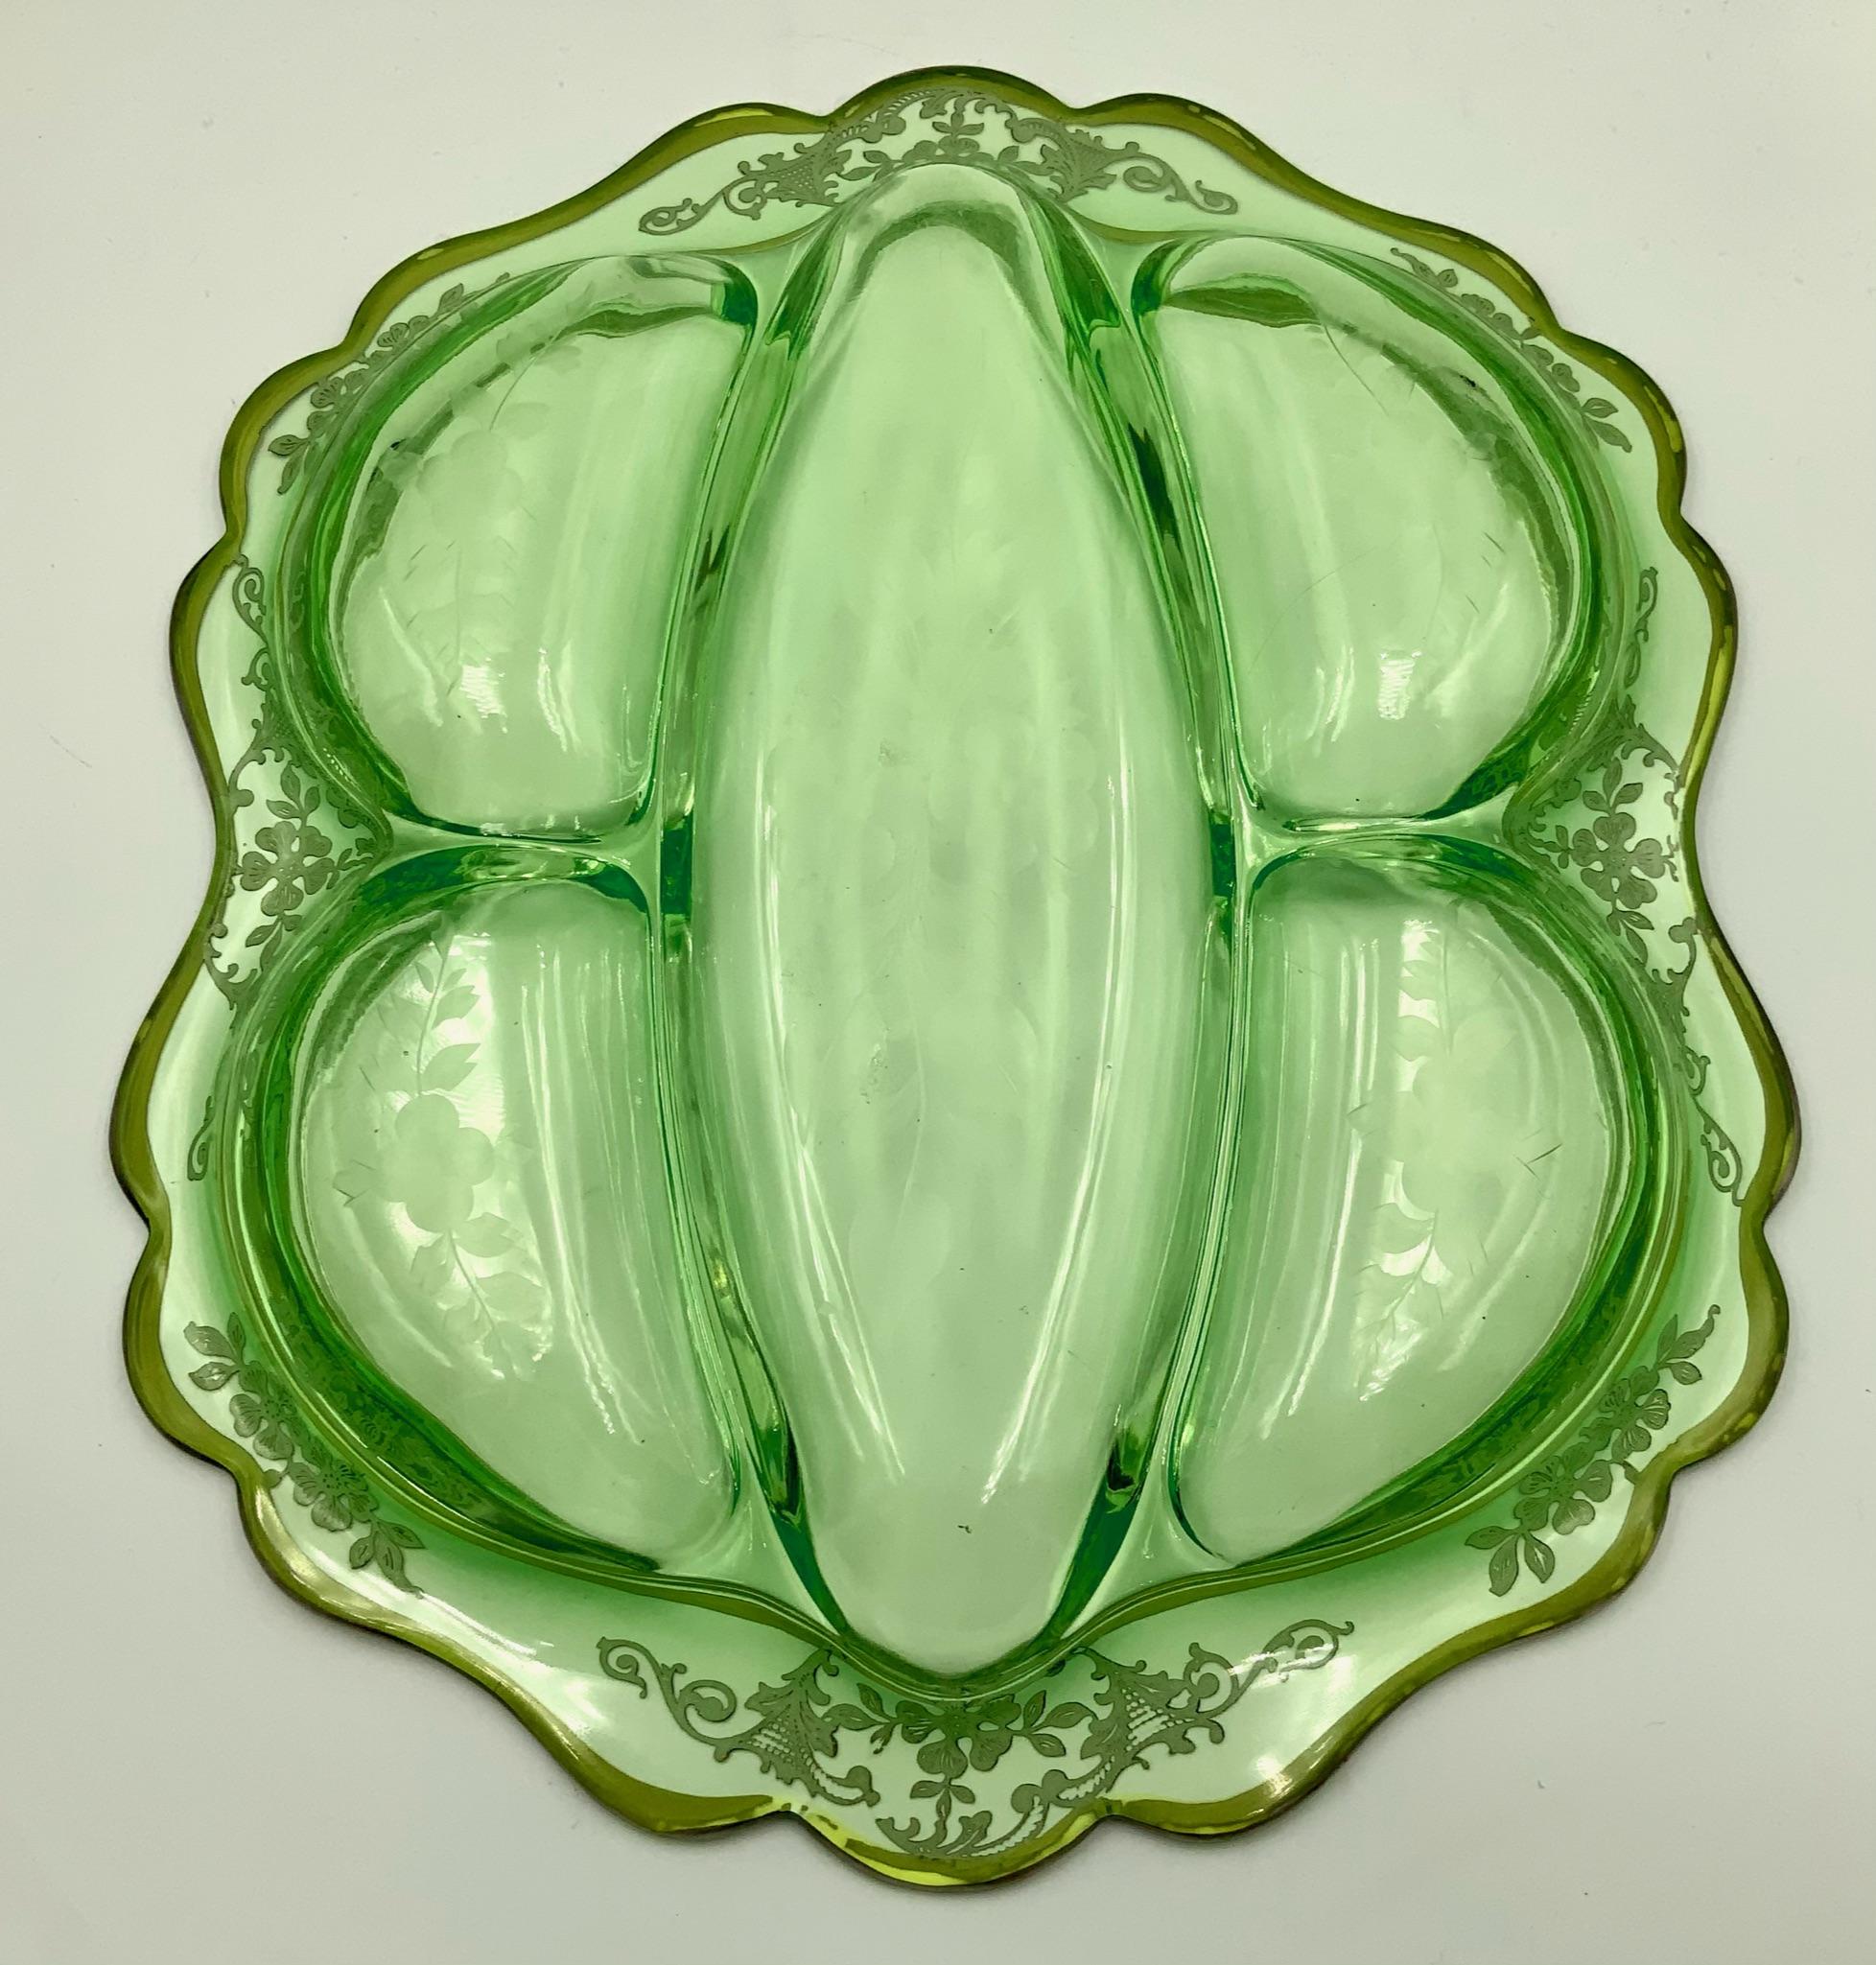 Wunderschöne große grüne 5-Teilige längliche Sellerie-/Reisschale aus Tiefdruckglas mit geätztem floralem und silbernem Überfangdesign. Ich glaube, dieses Stück ist # 3400 von Cambridge Glass Co. zwischen 1930 und 1950, die dann mit einem geätzten